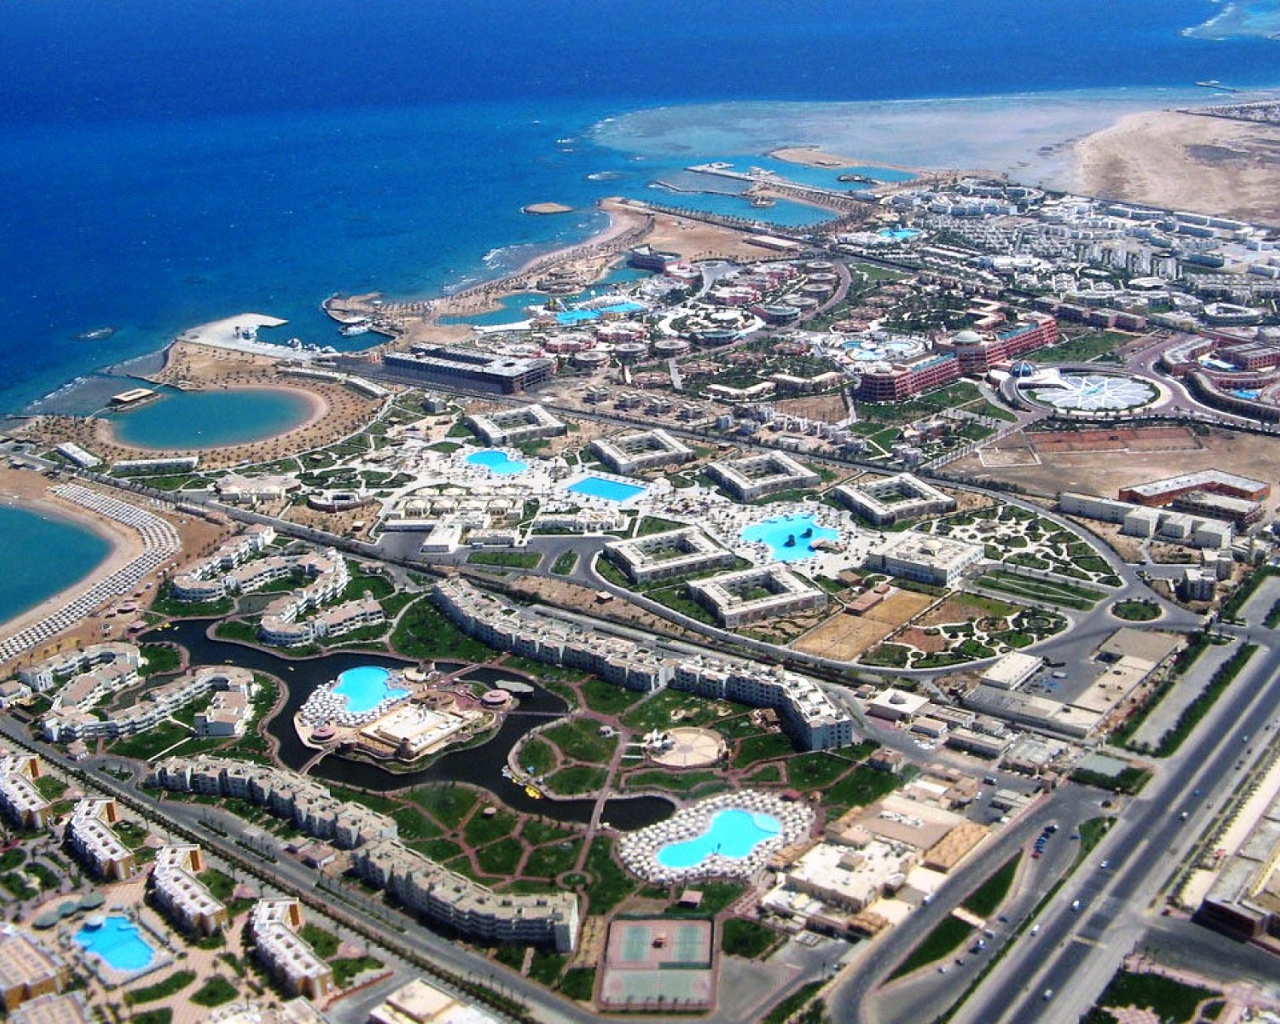 Panorama of the resort of Hurghada, Egypt